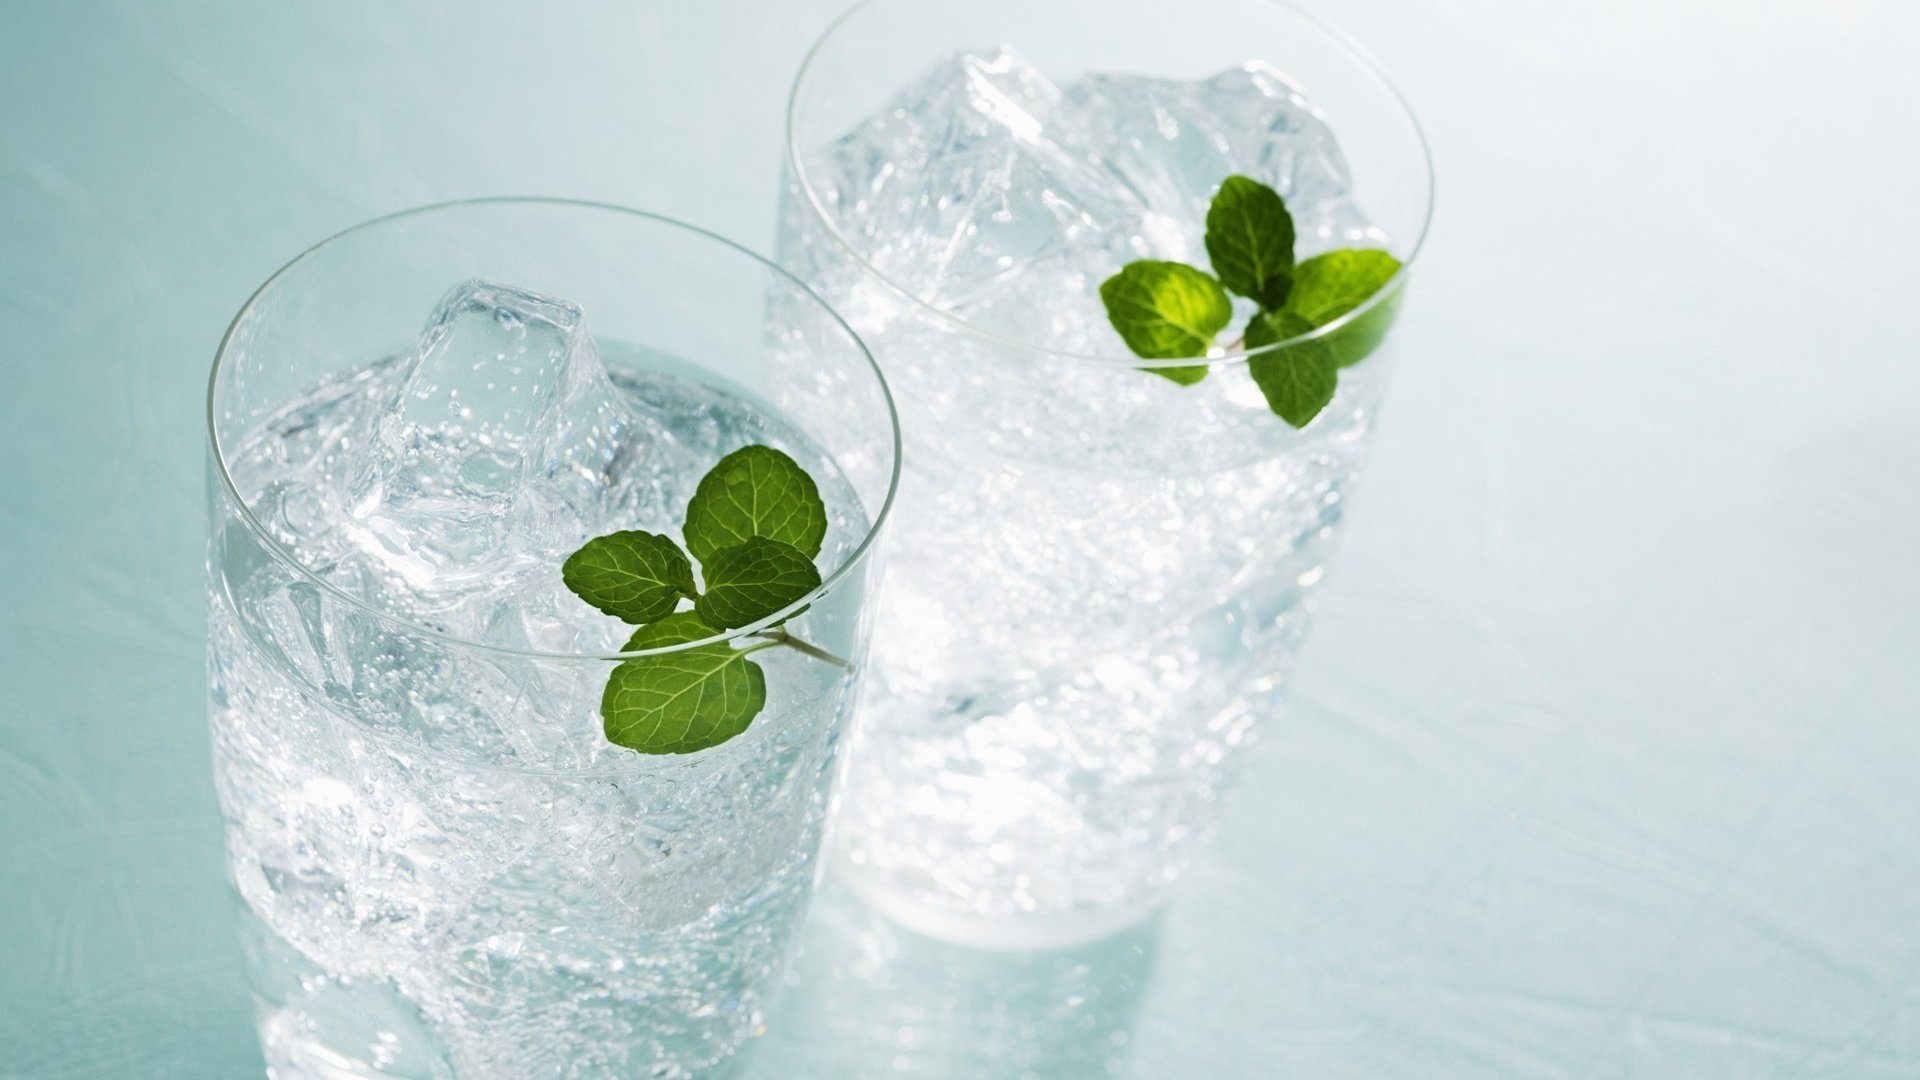 Стакан с зеленой водой. Лед в стакане. Вода со льдом. Стакан воды со льдом. Бокал со льдом.